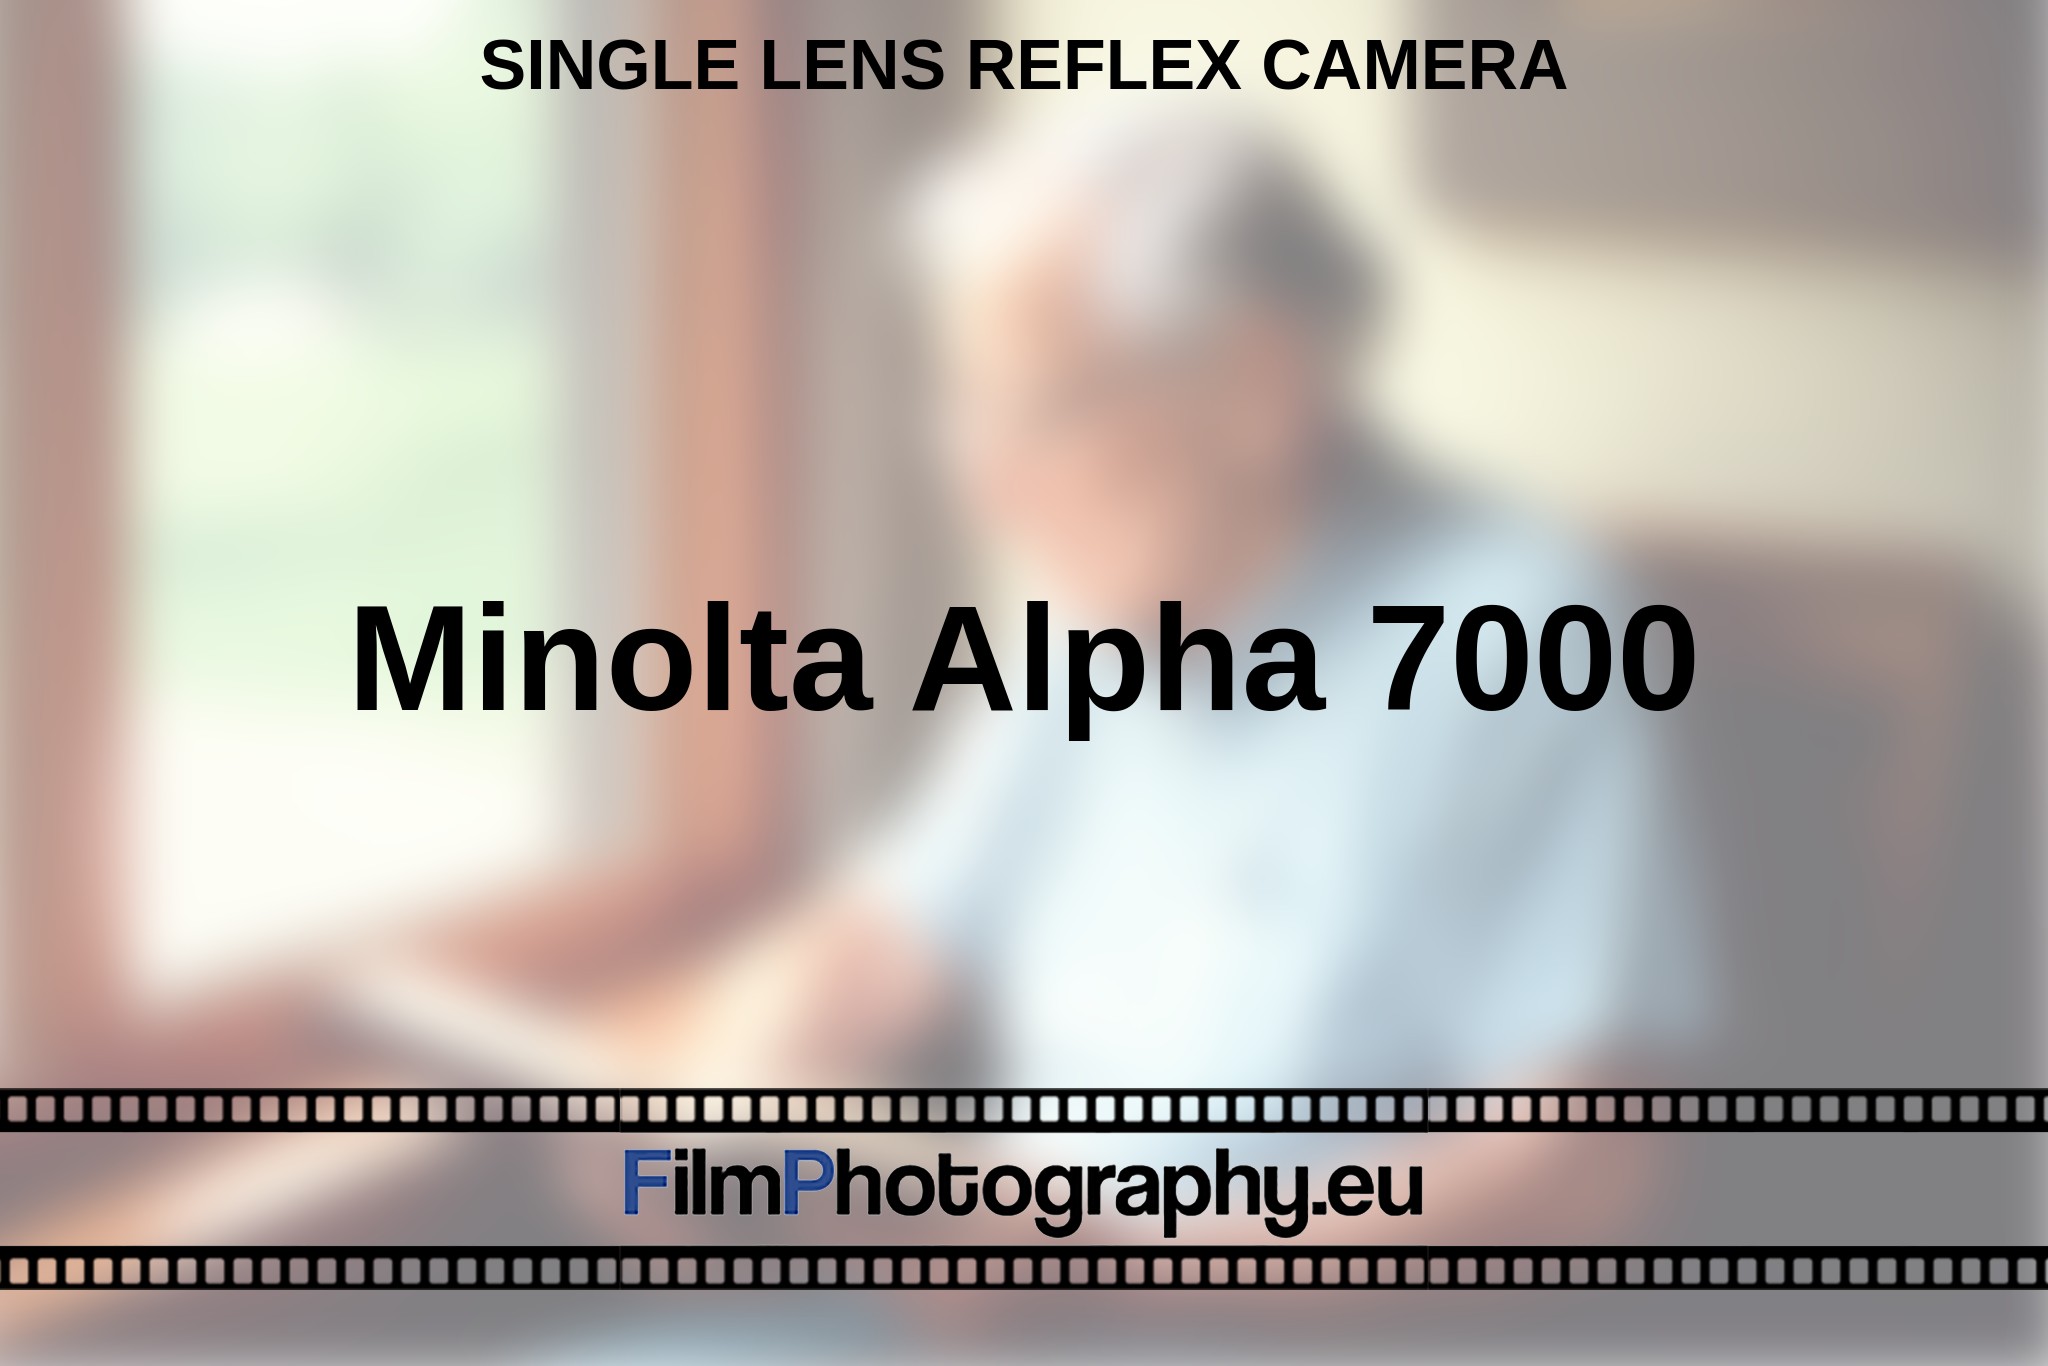 minolta-alpha-7000-single-lens-reflex-camera-en-bnv.jpg